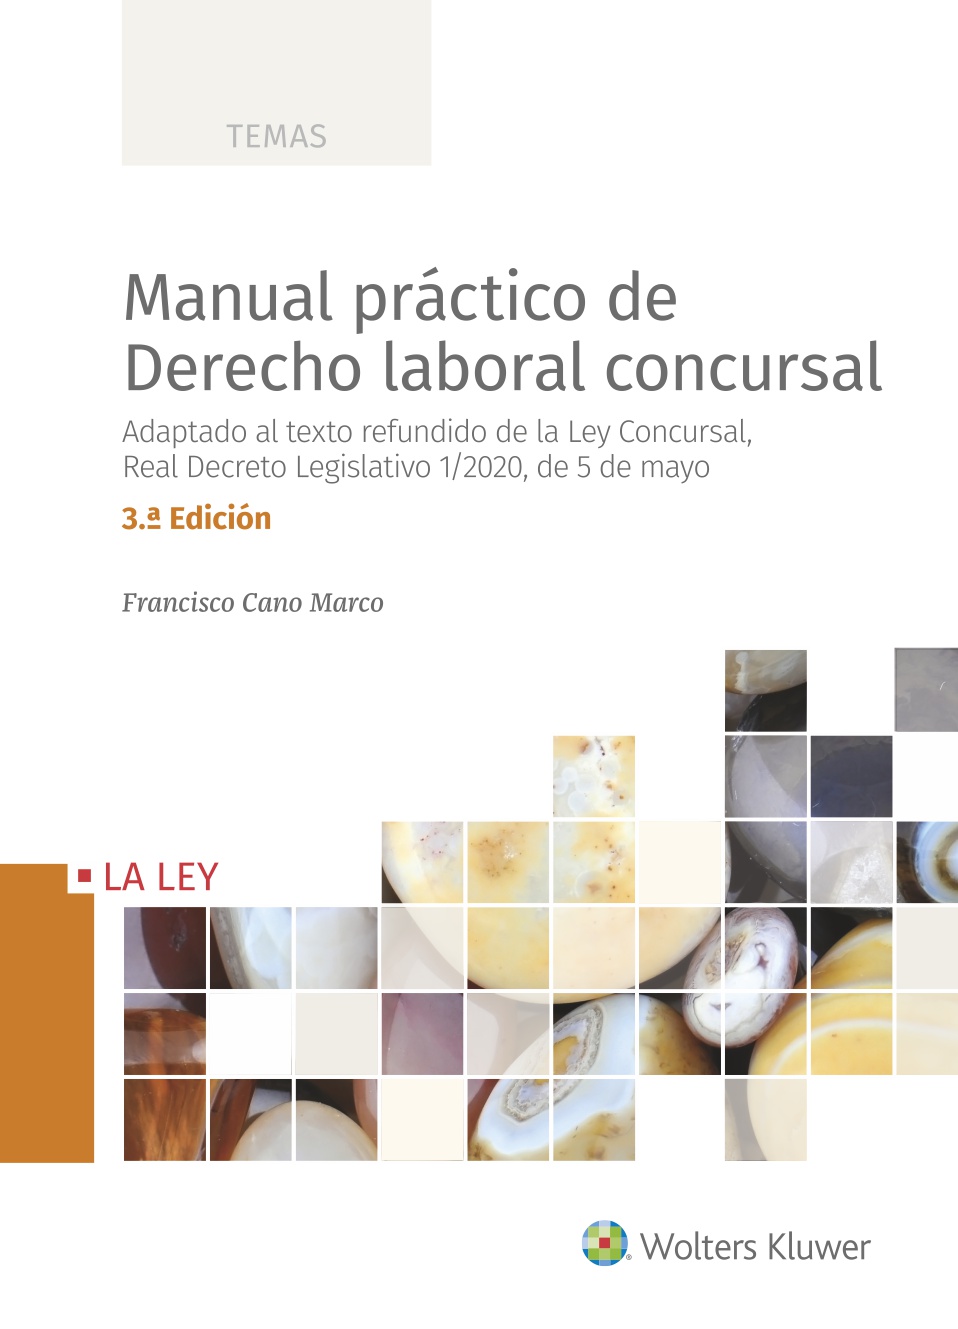 Manual práctico de Derecho laboral concursal (3.ª edición)